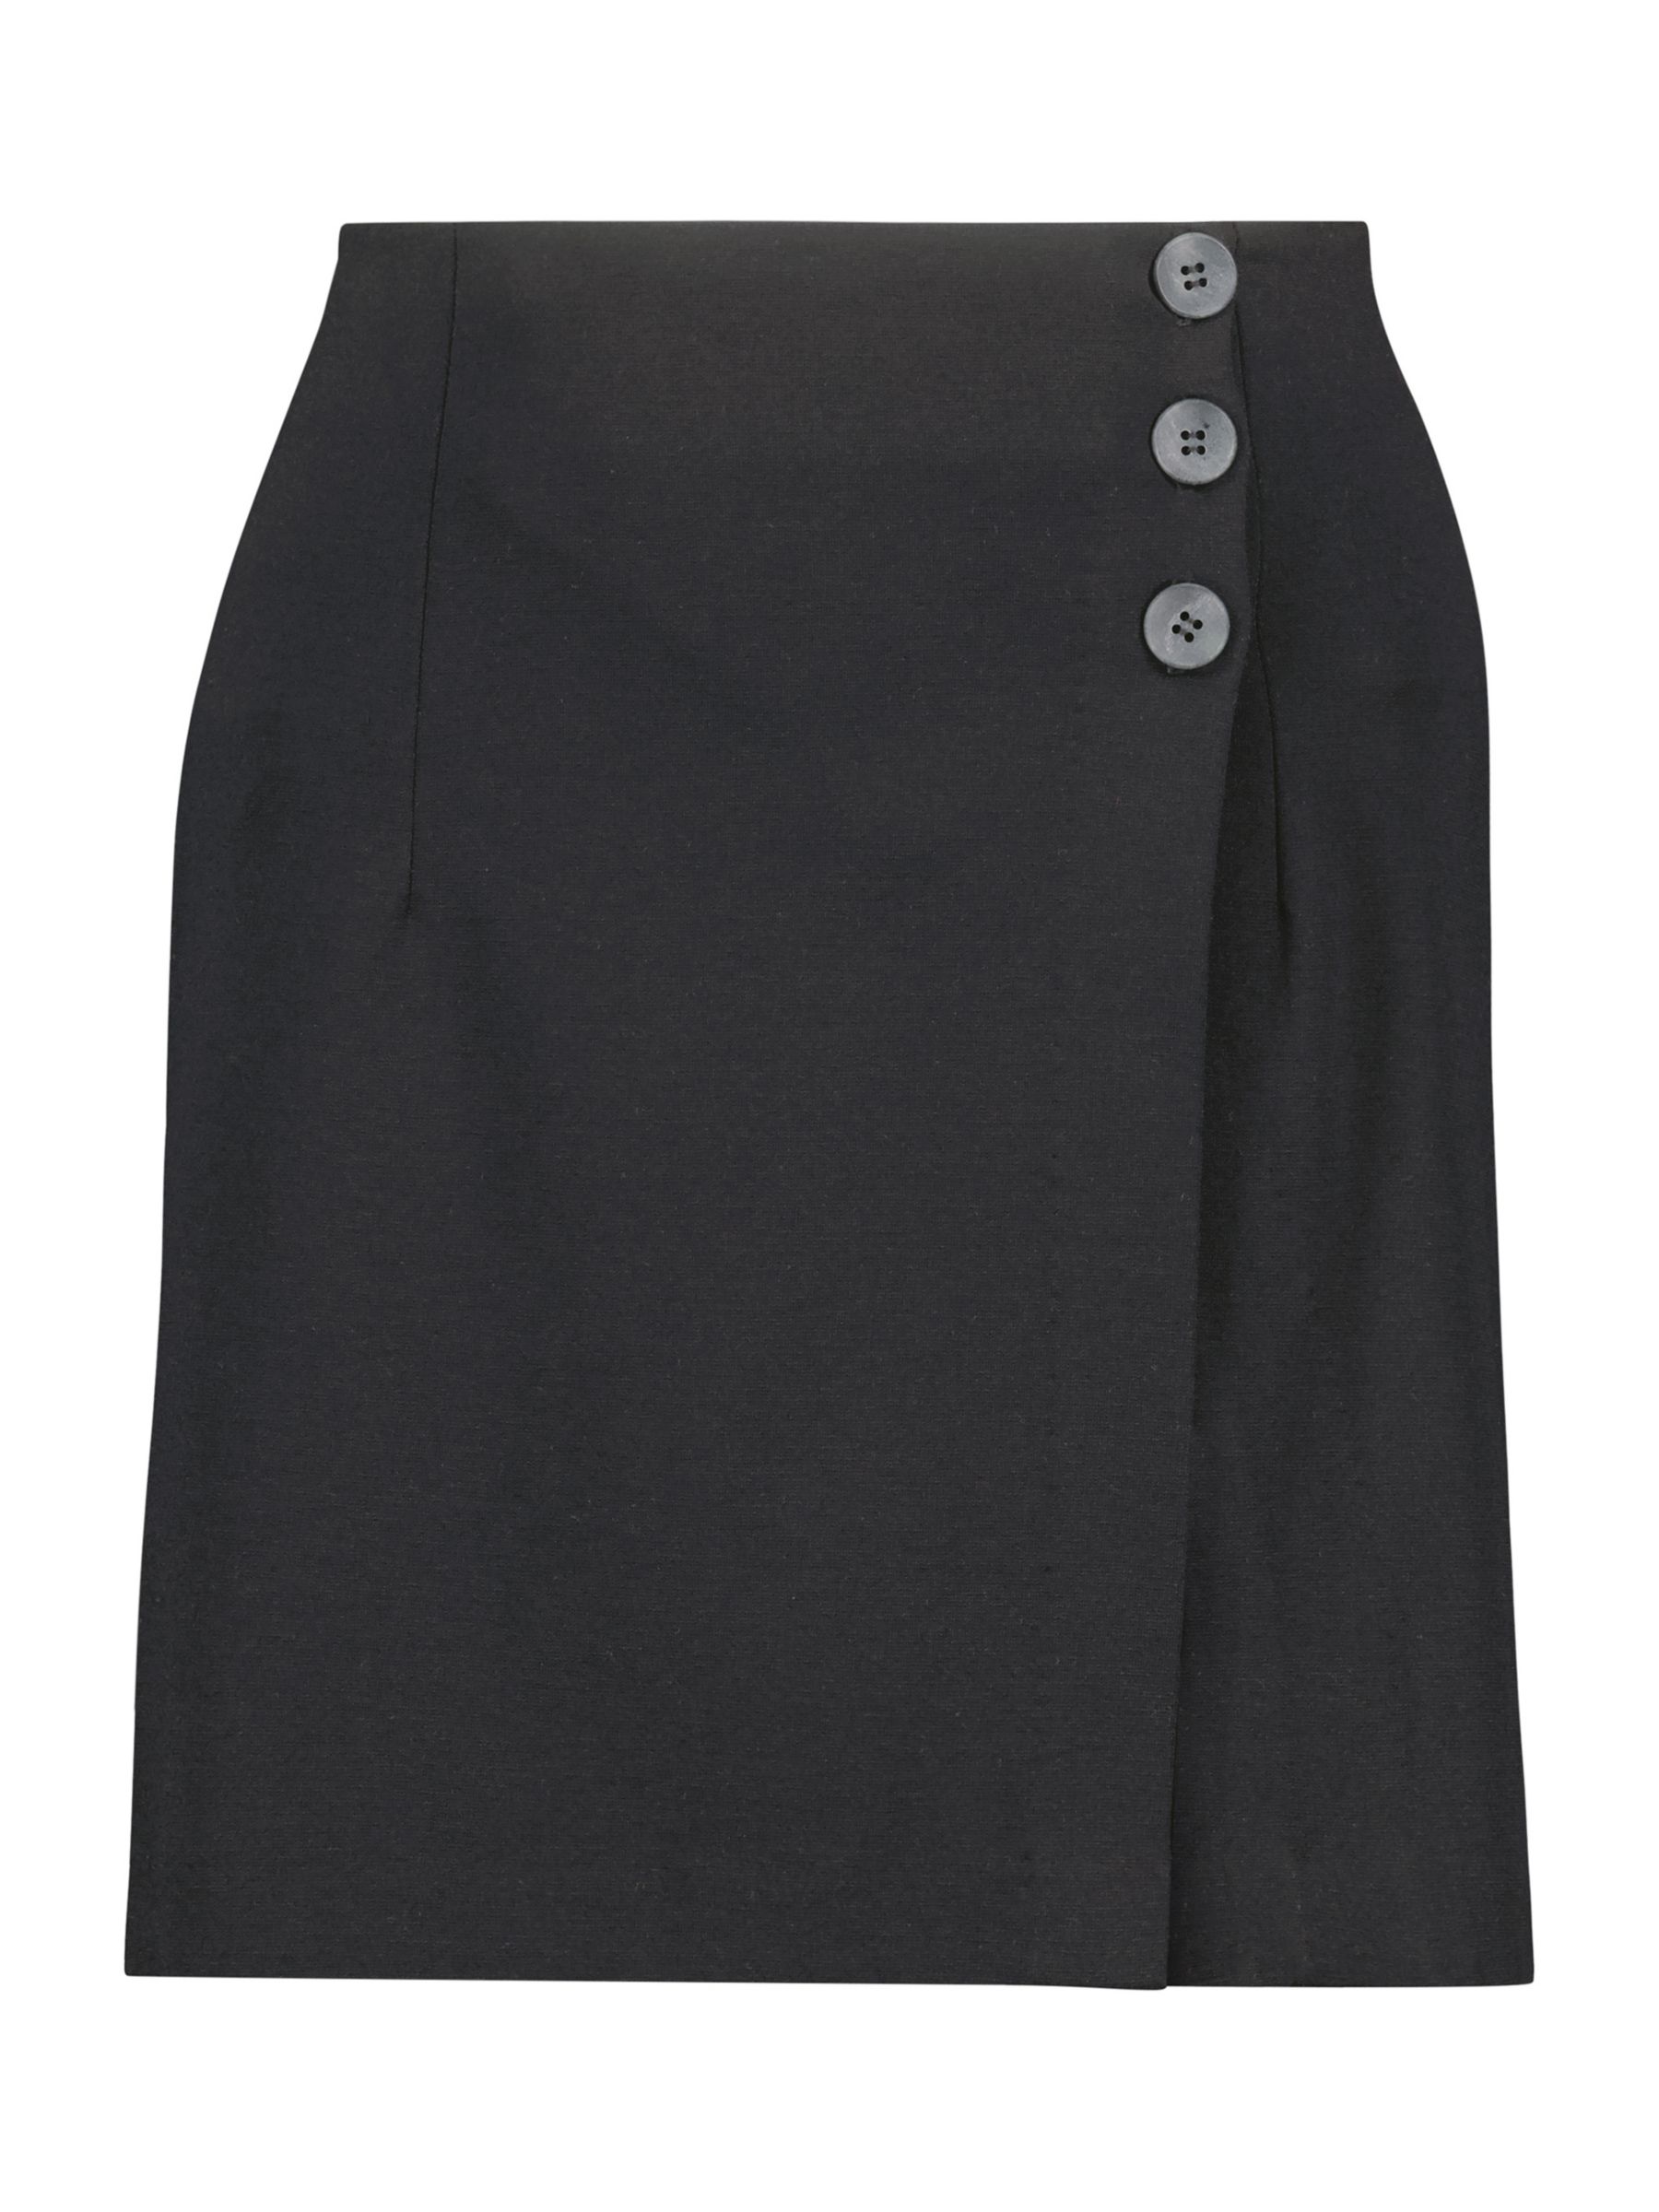 Buy Baukjen Marais Mini Skirt, Caviar Black Online at johnlewis.com